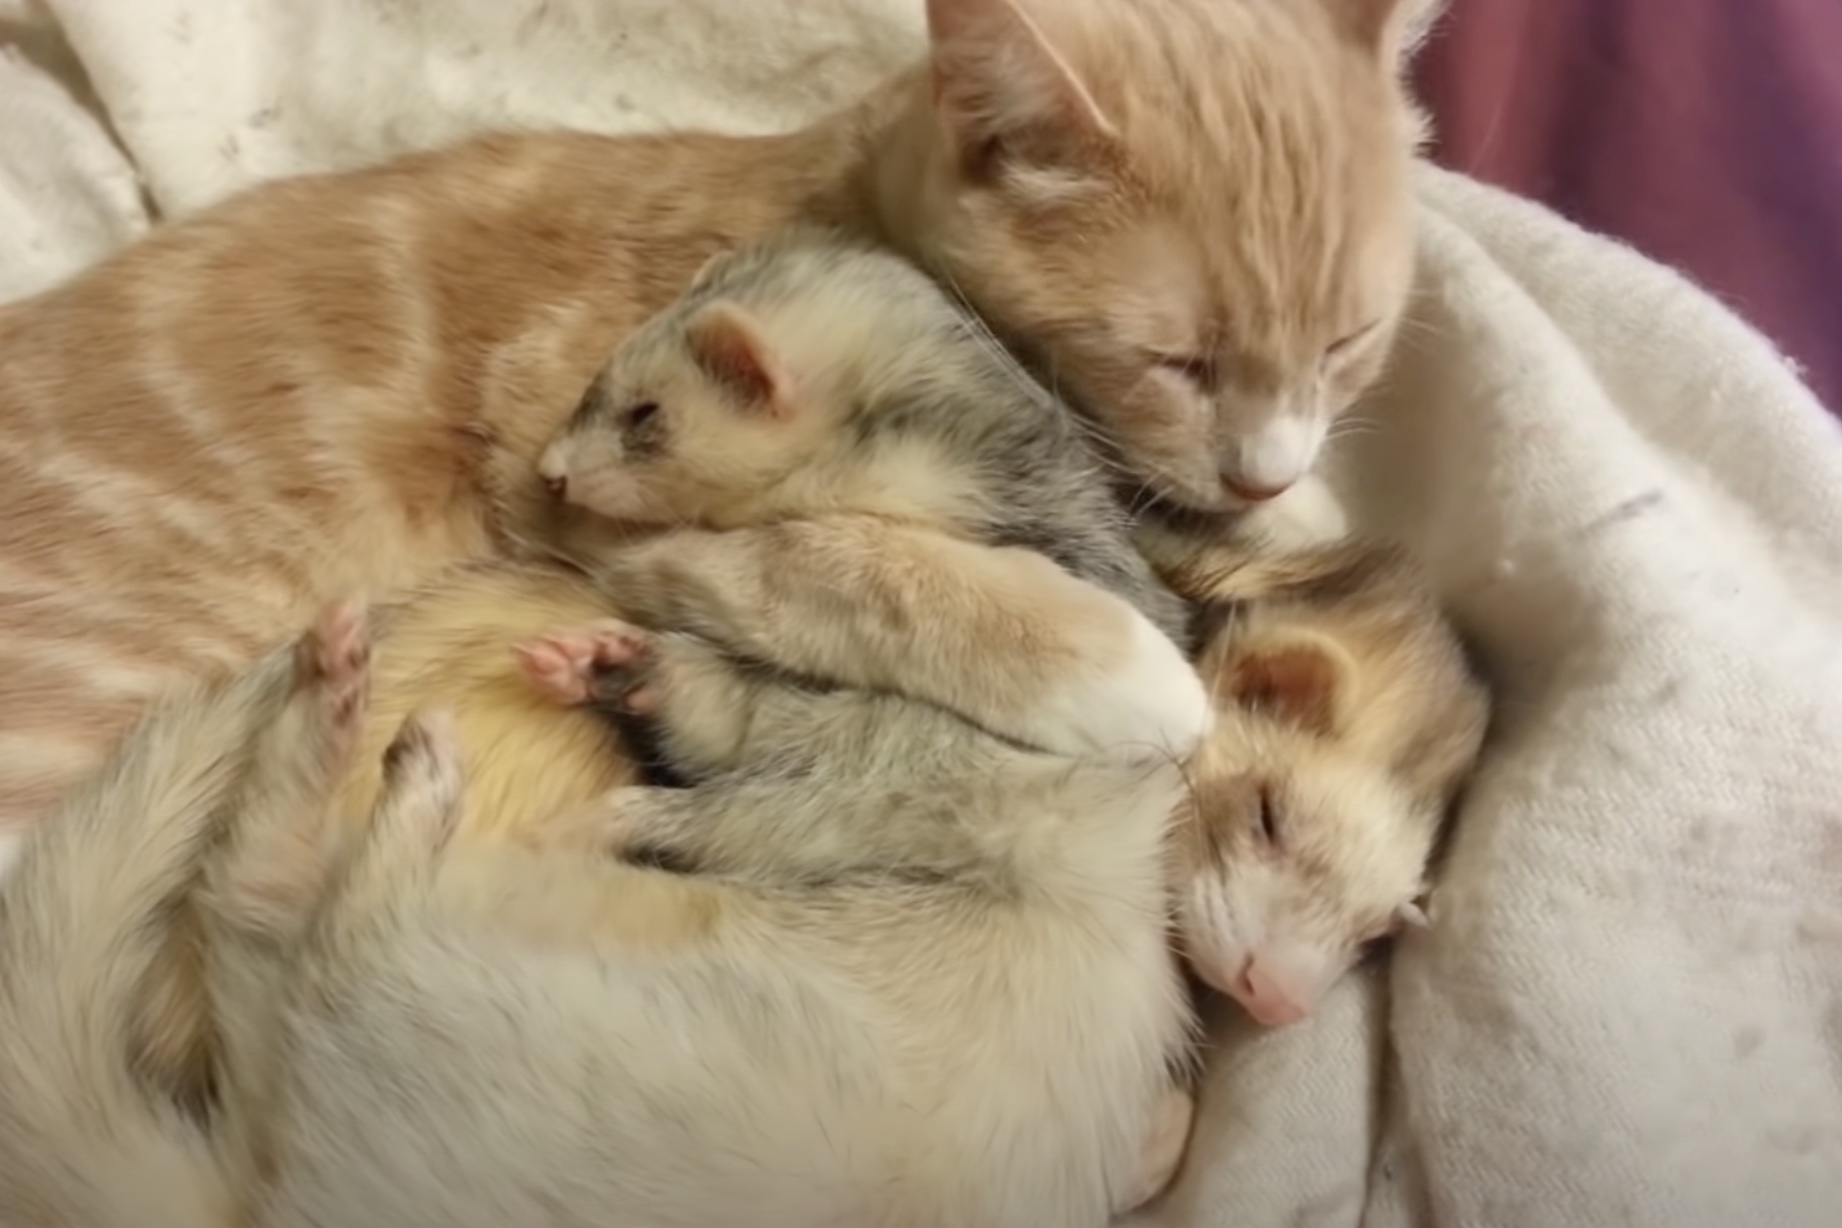 Cat & Ferrets Cuddle